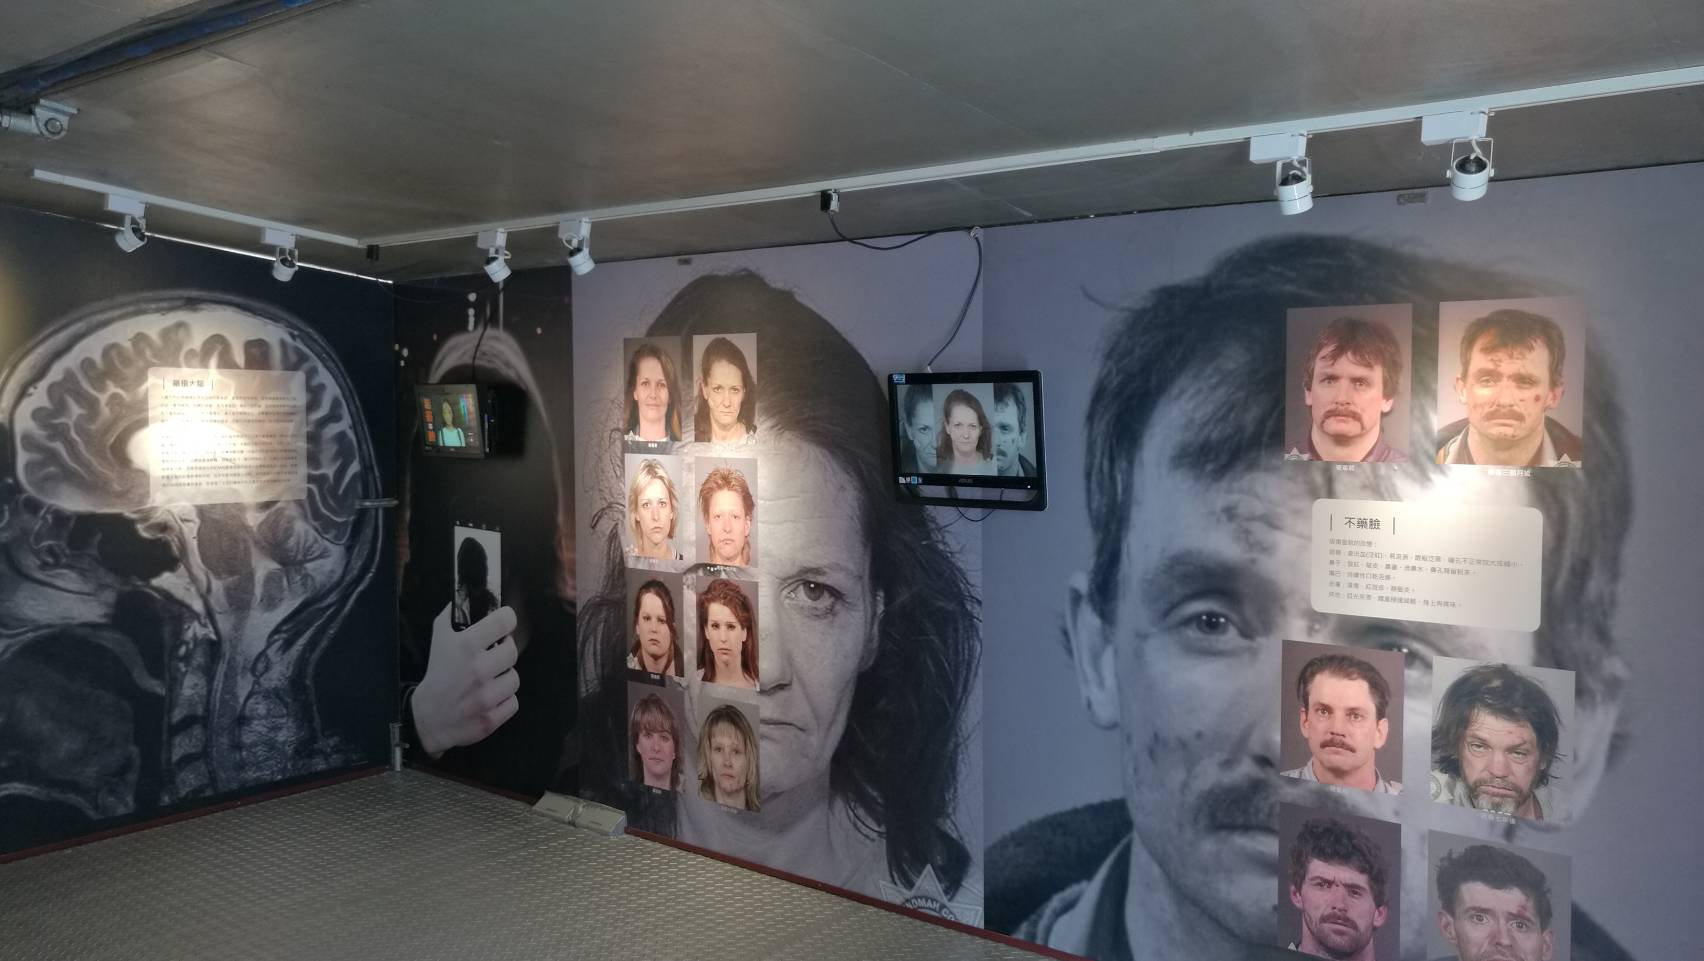 「藥不藥．一念間」反毒行動博物館特展於捷運西門站1號出口廣場展出至6月15日止(免費參展)